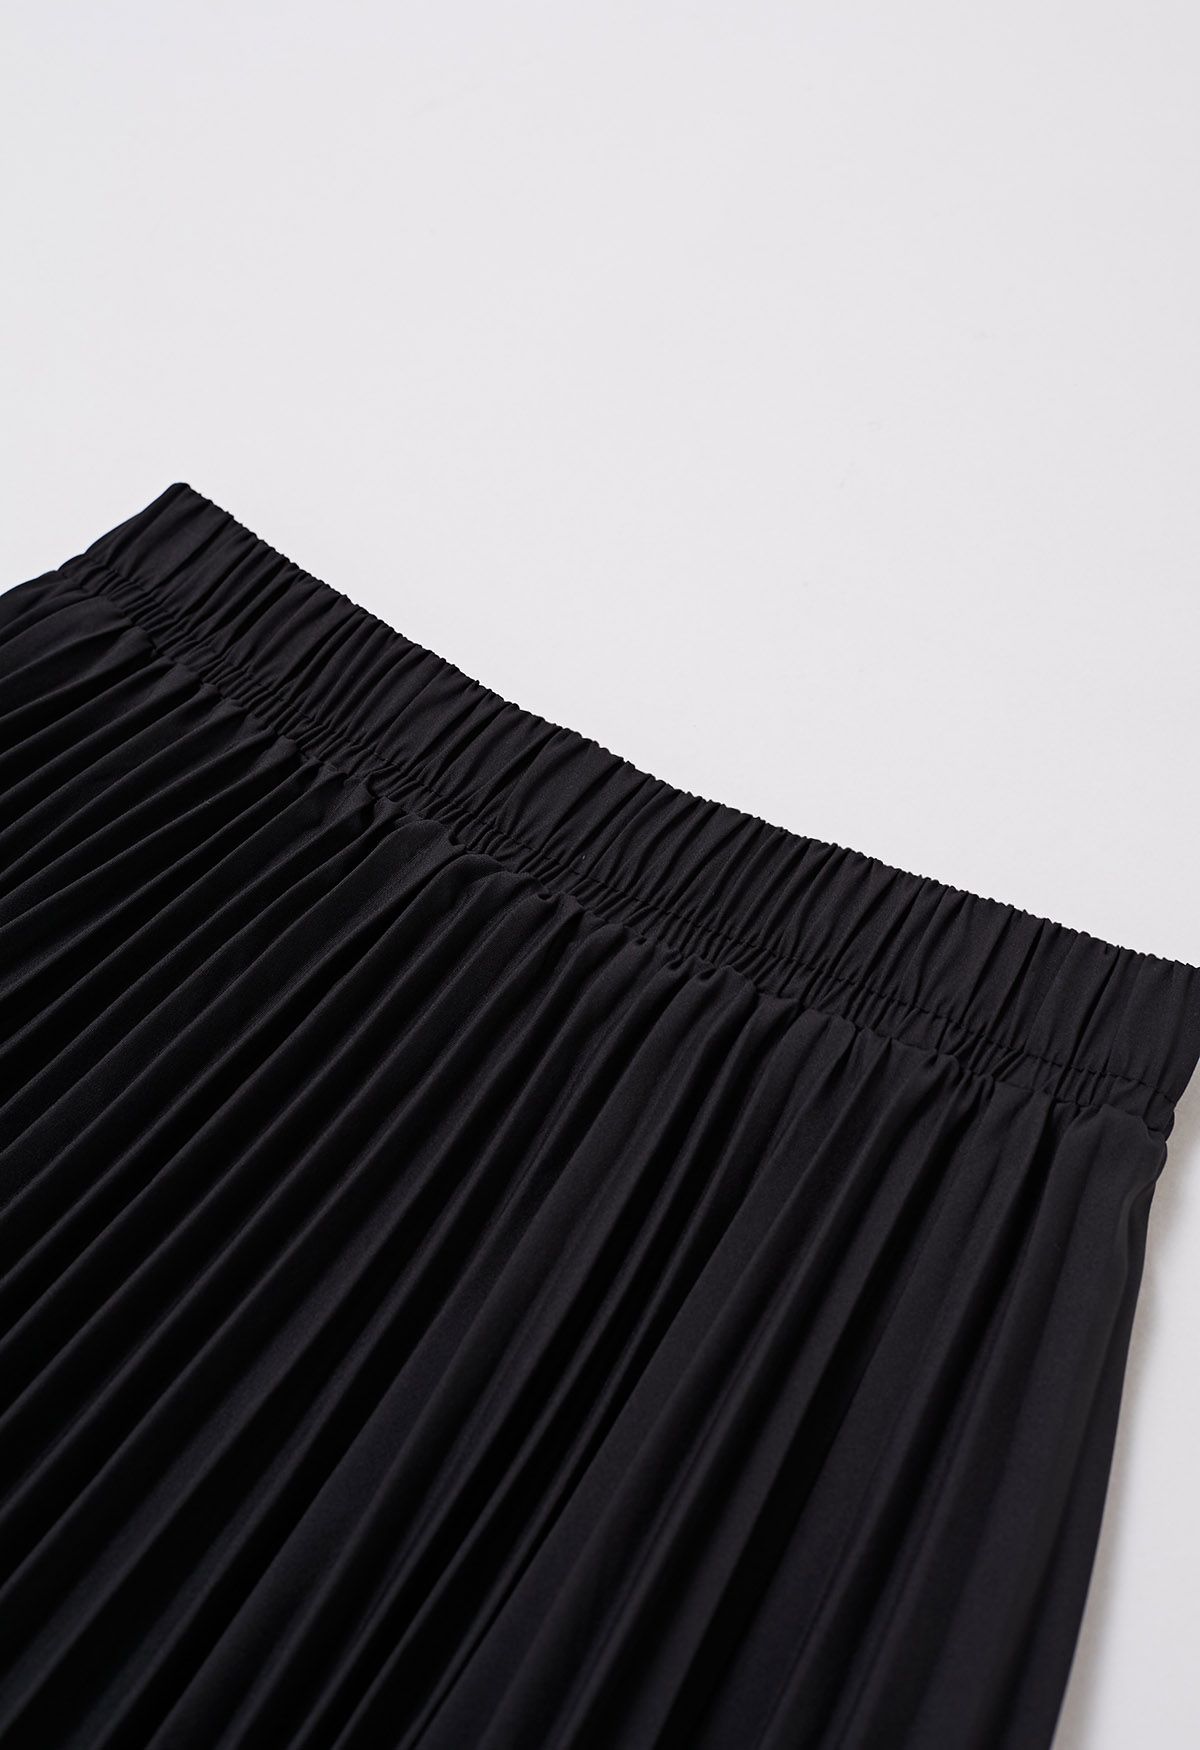 Falda larga plisada con empalme de encaje floral en negro